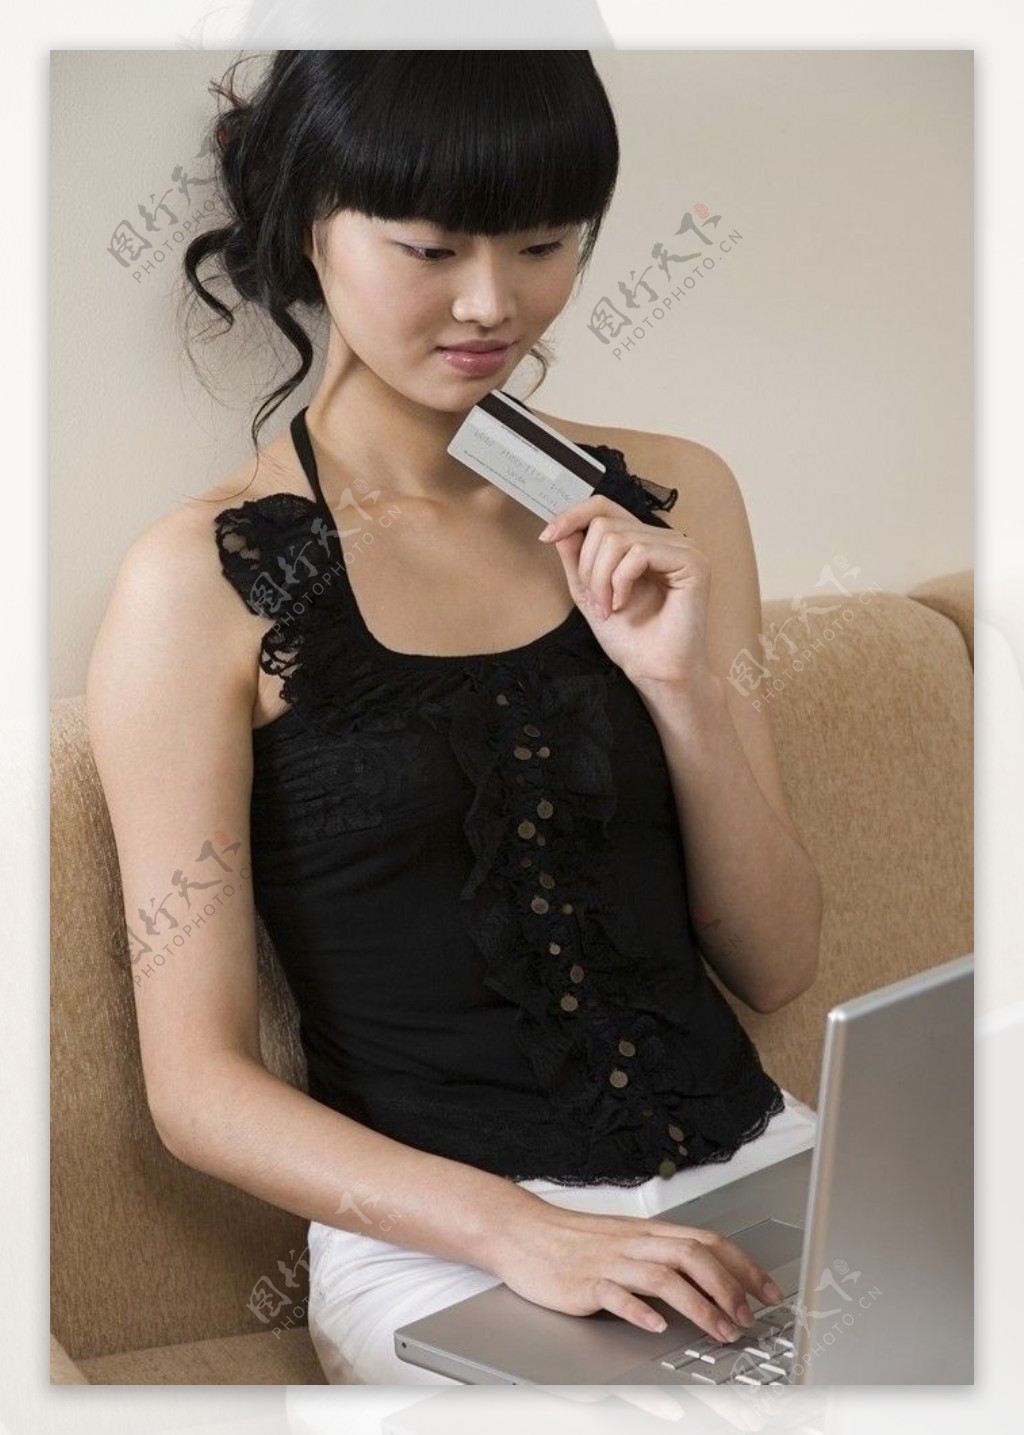 笔记本电脑上网聊天的美女图片